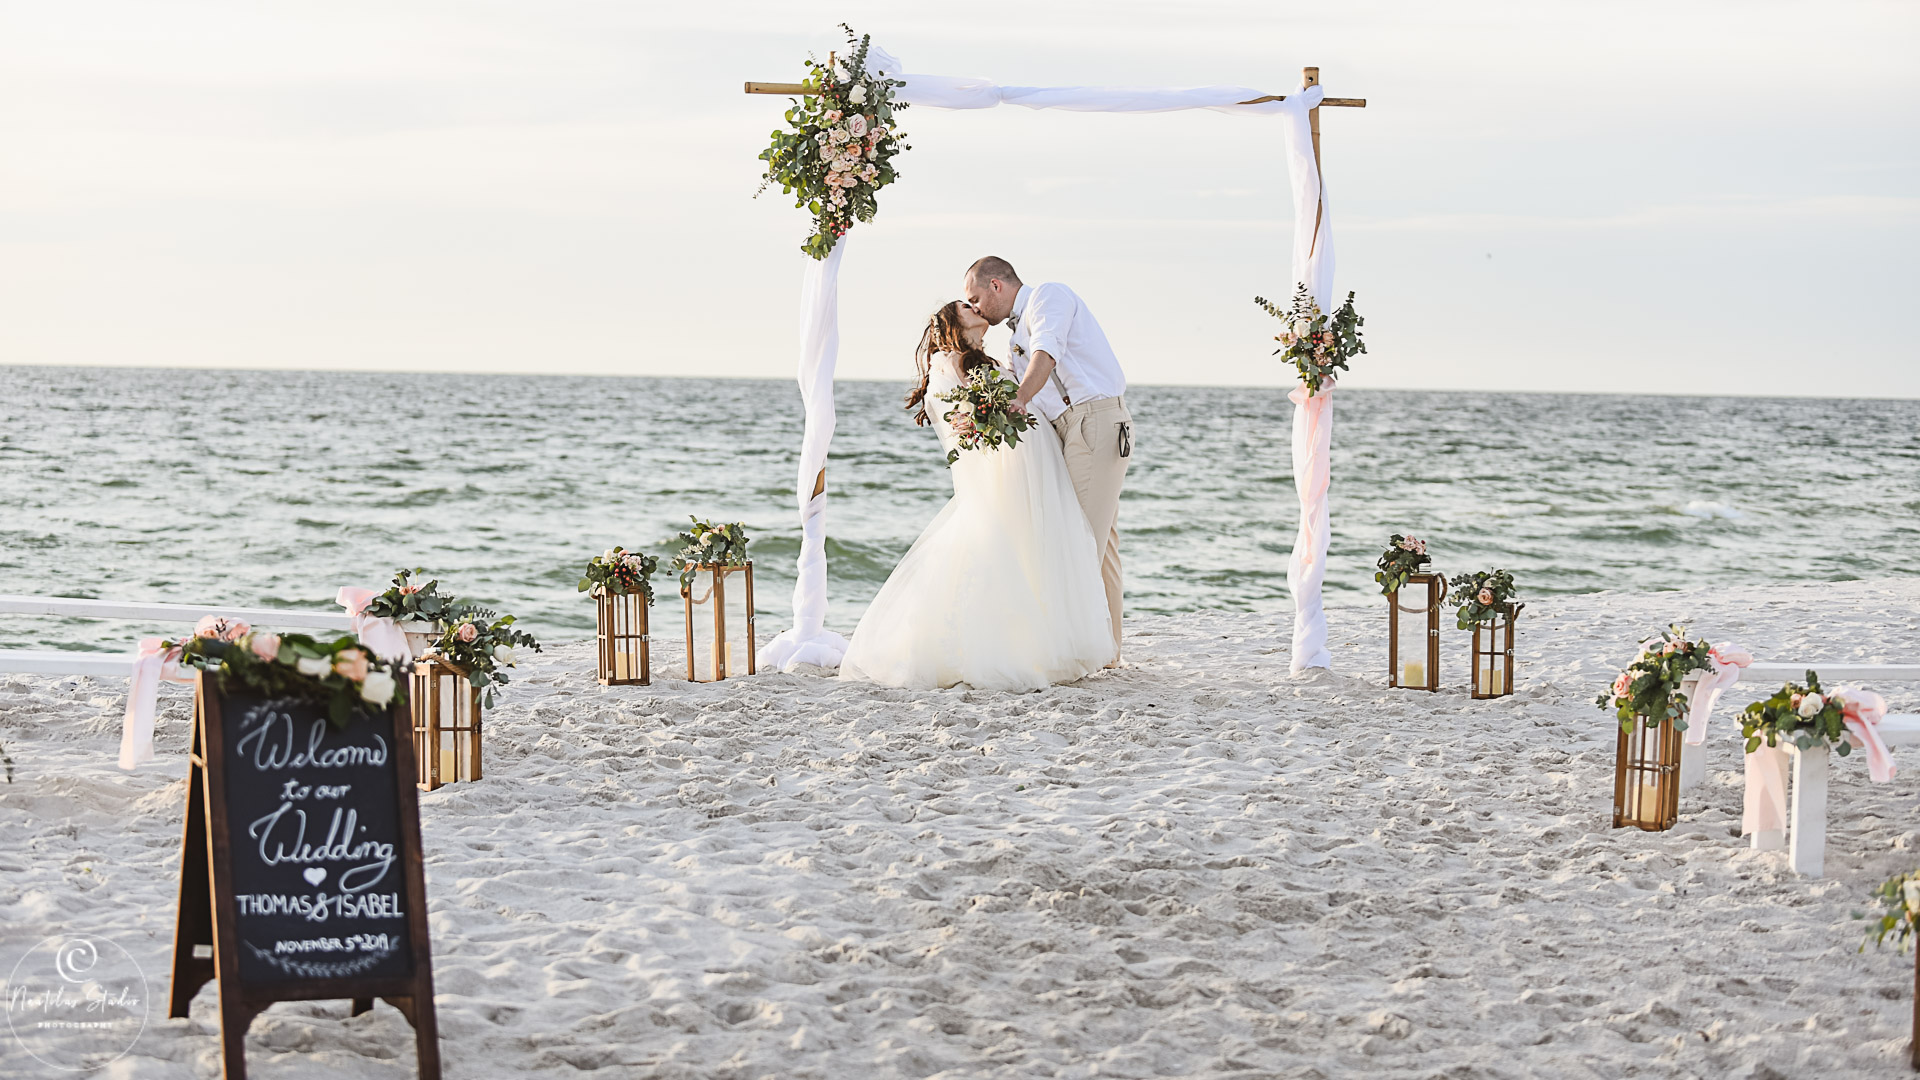 Boda elopement Naples Florida, foto de la novia y el novio besándose bajo el arco de la boda